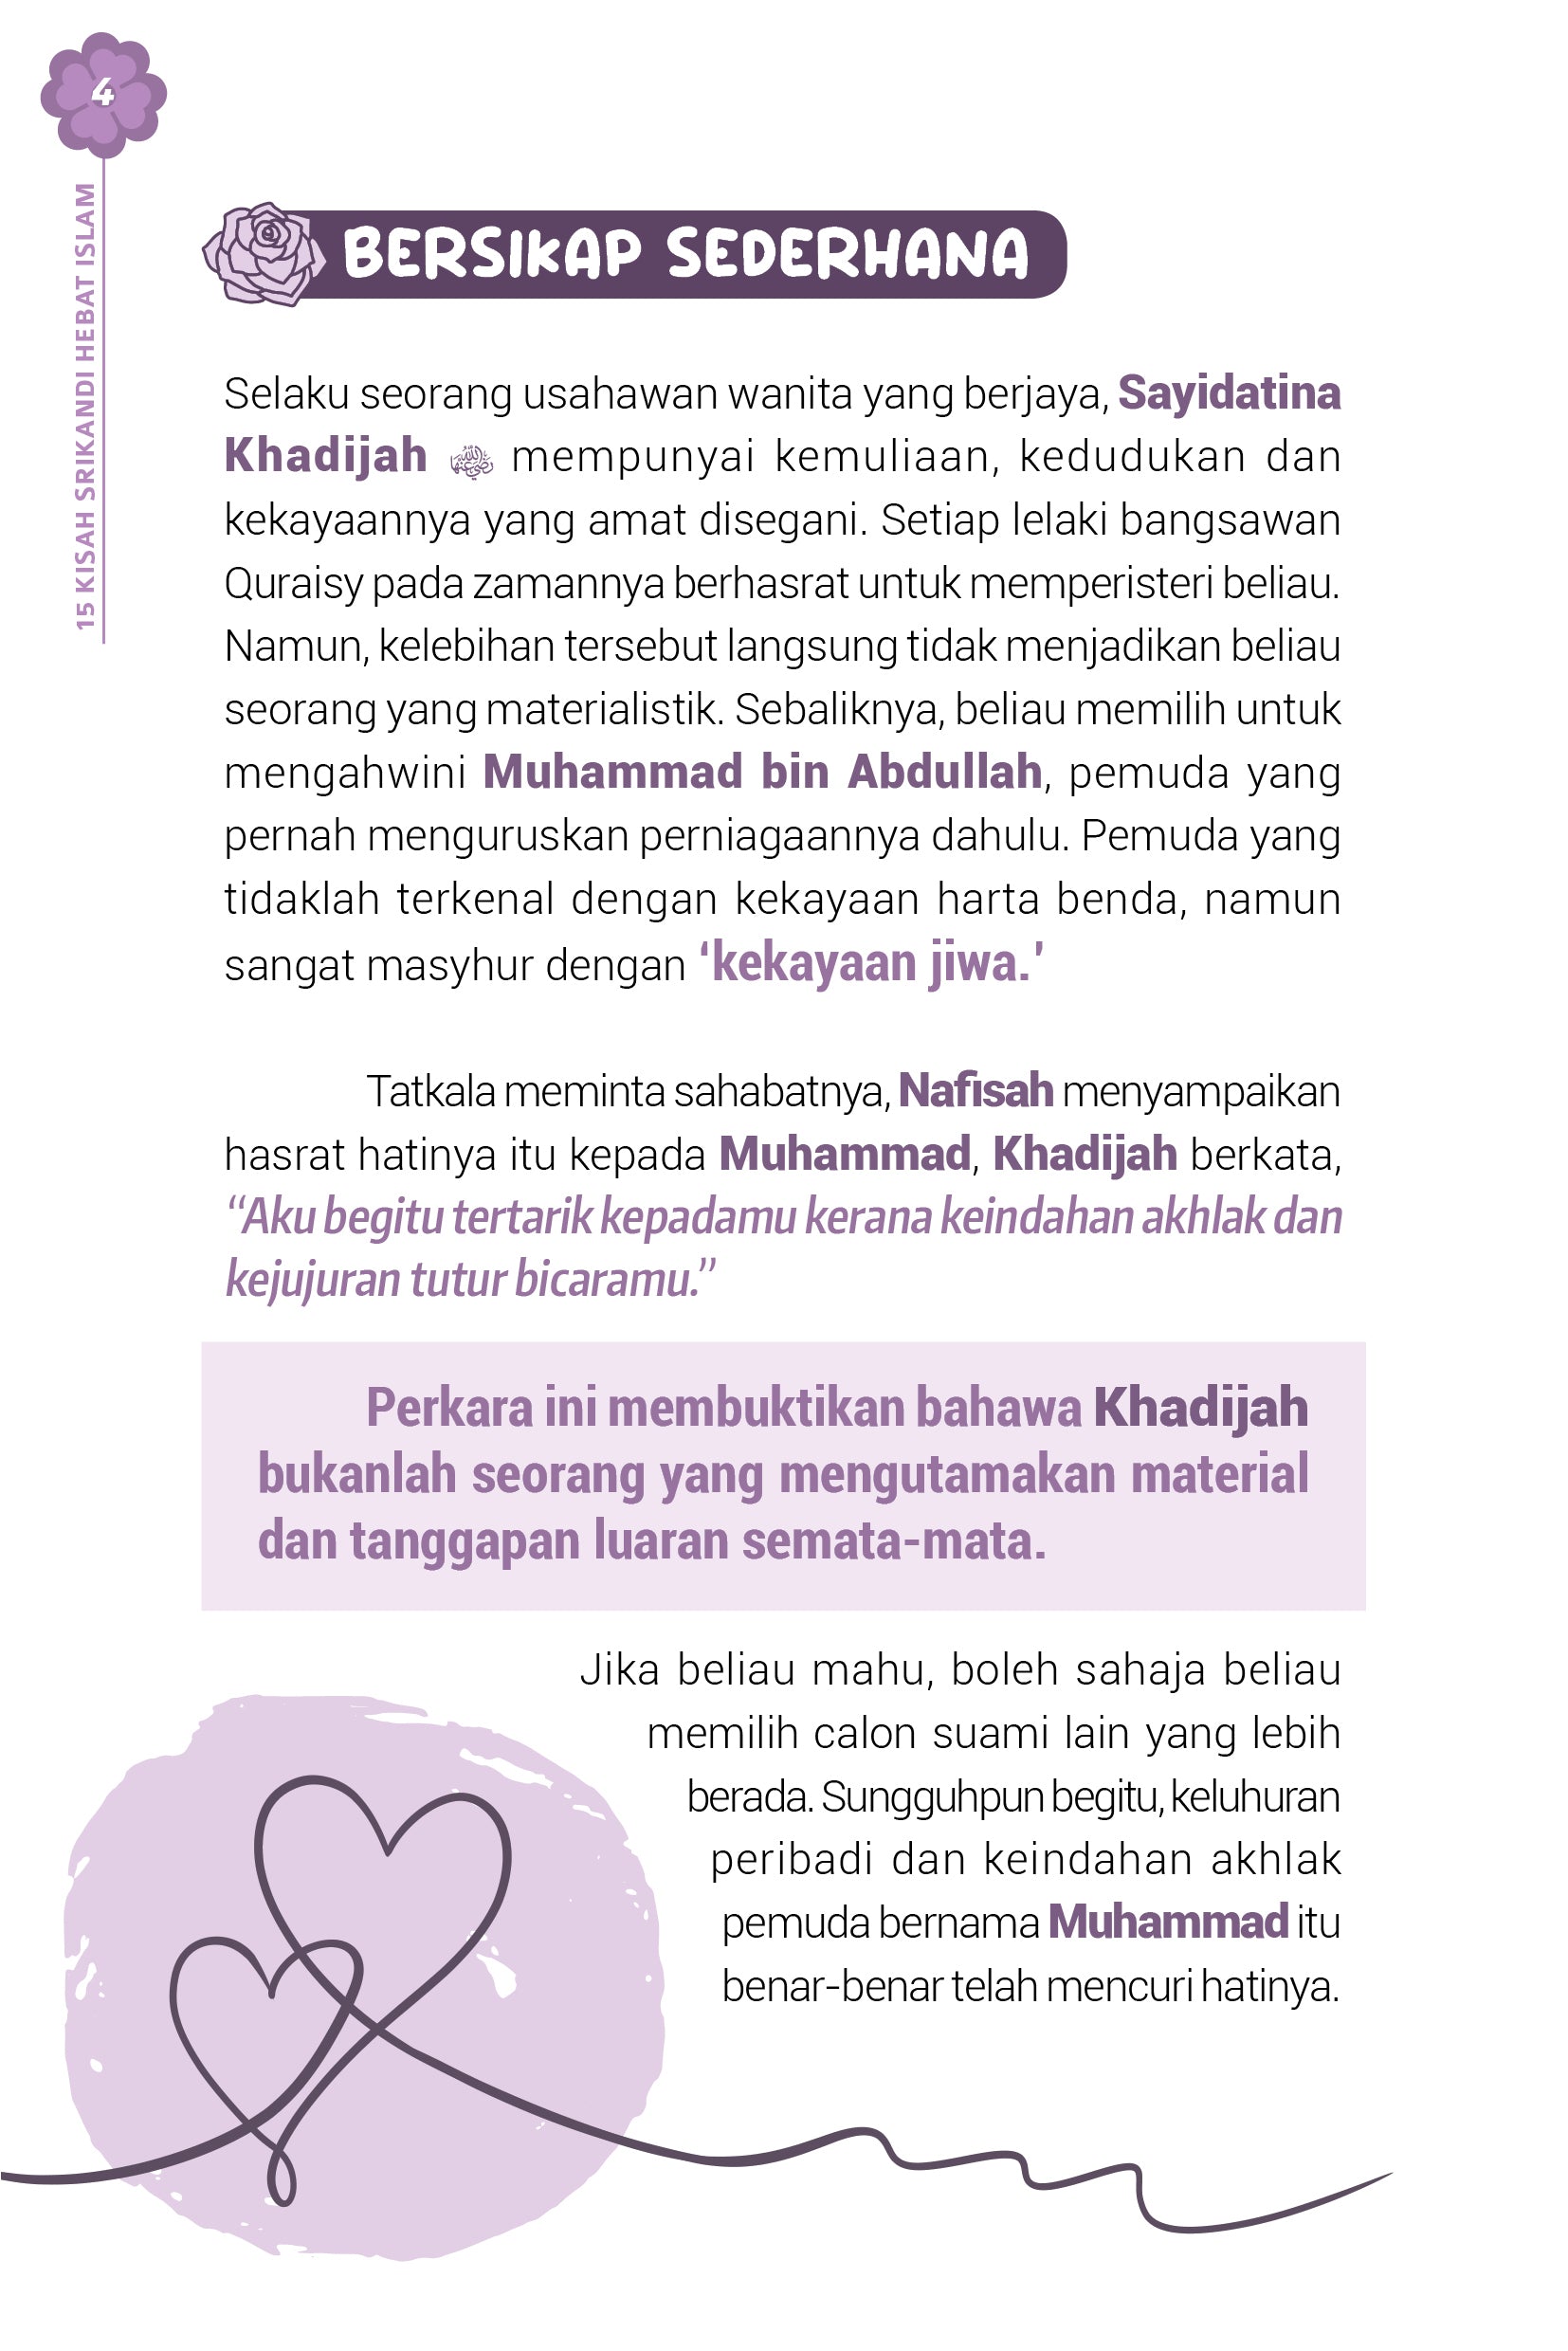 15 Kisah Srikandi Hebat Islam - (TBBK1525)